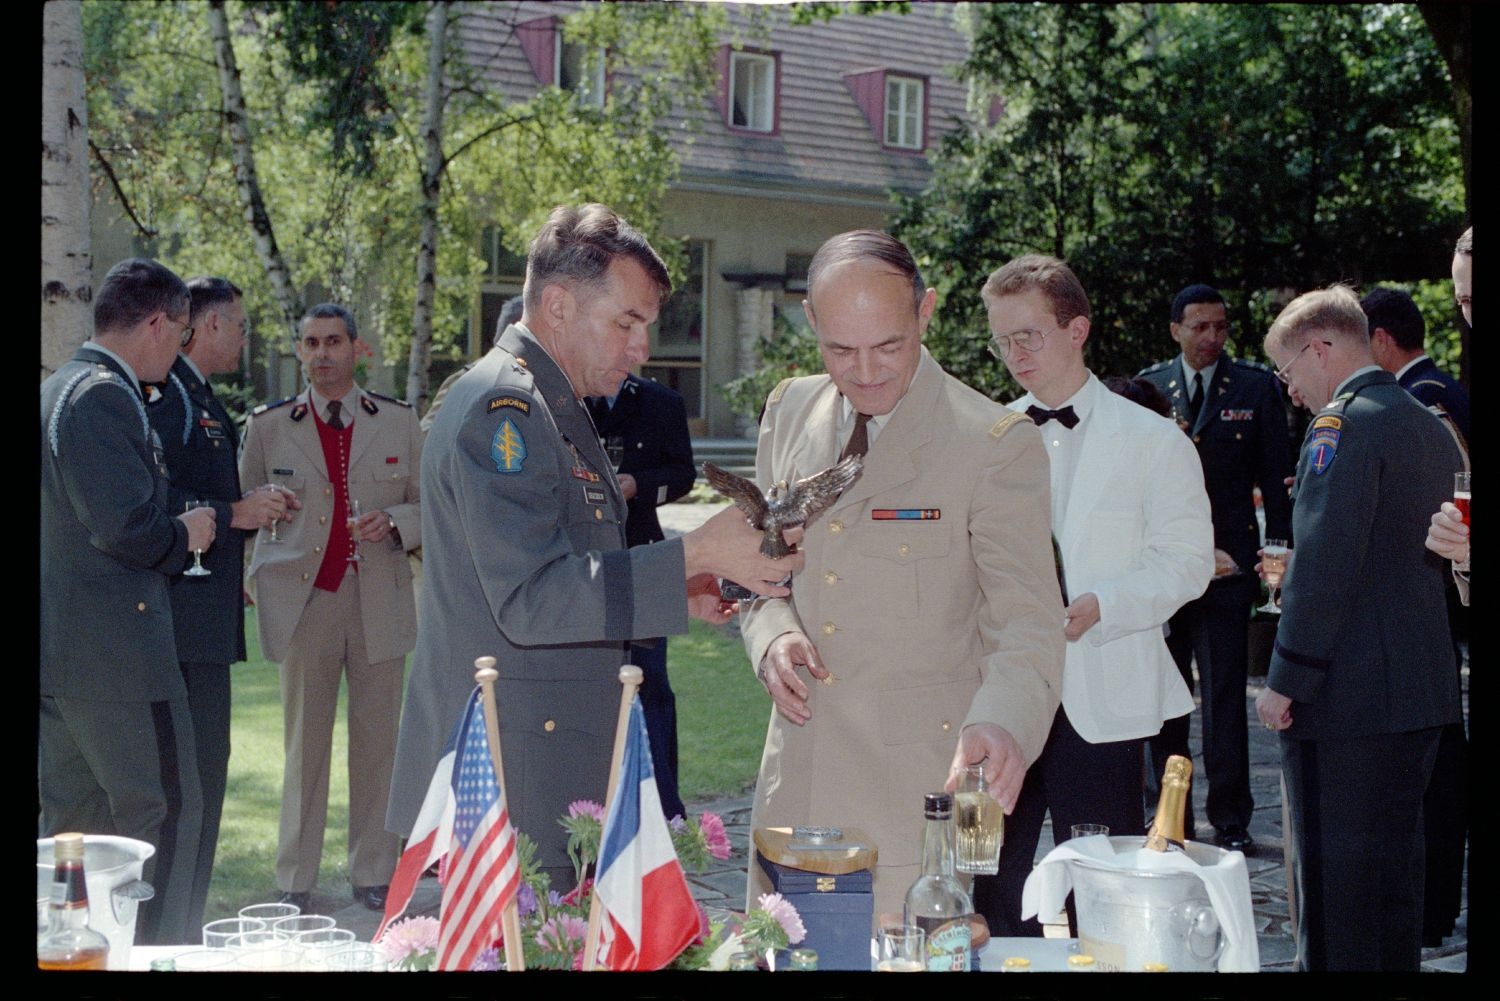 Fotografie: Besuch von Brigadier General Sidney Shachnow im Quartier Napoléon in Berlin-Reinickendorf